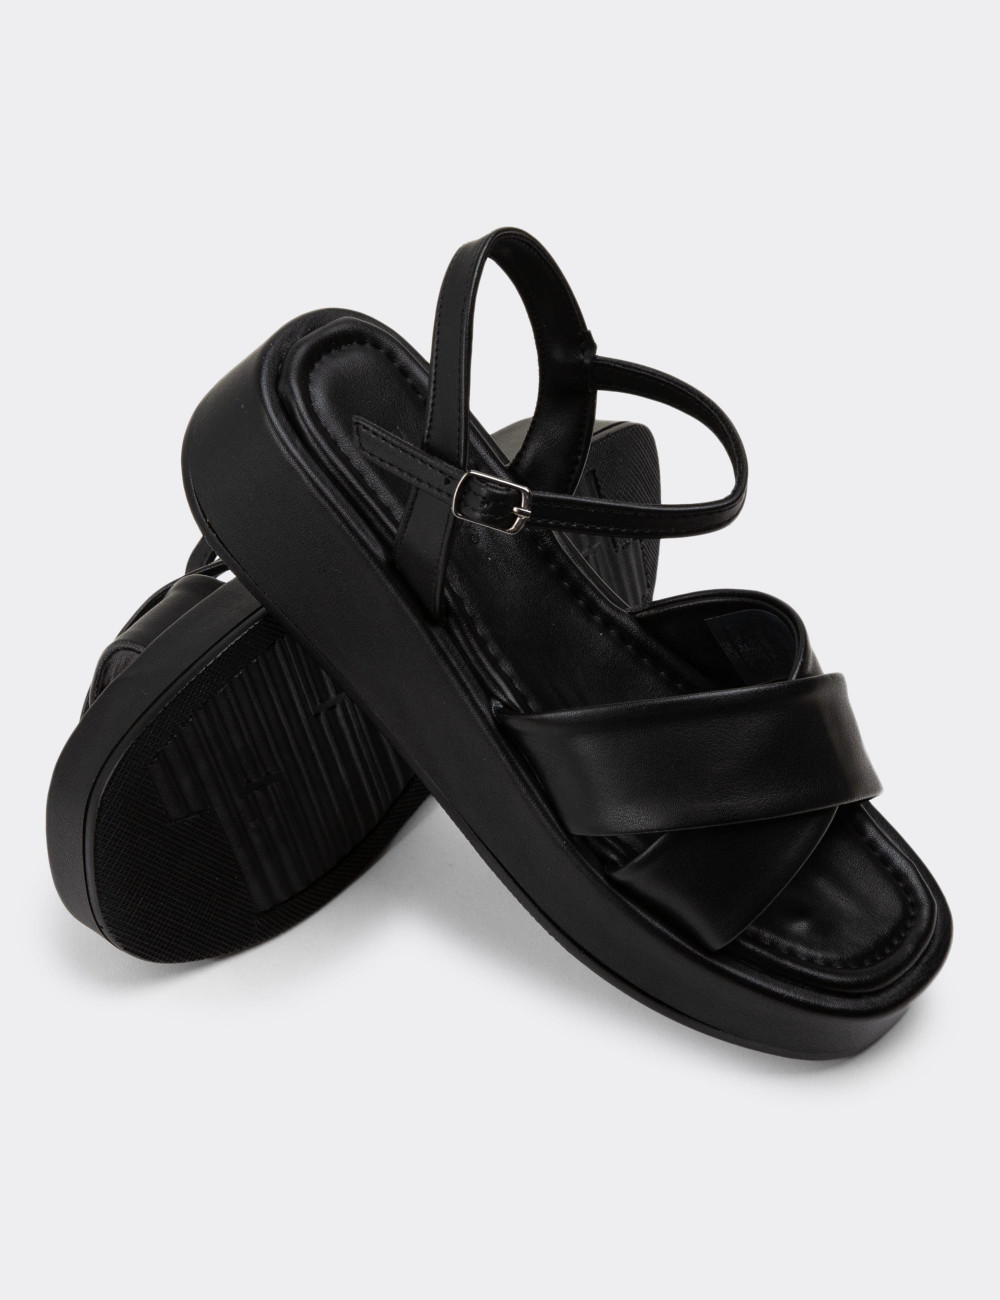 Siyah Kadın Sandalet - N1010ZSYHP01